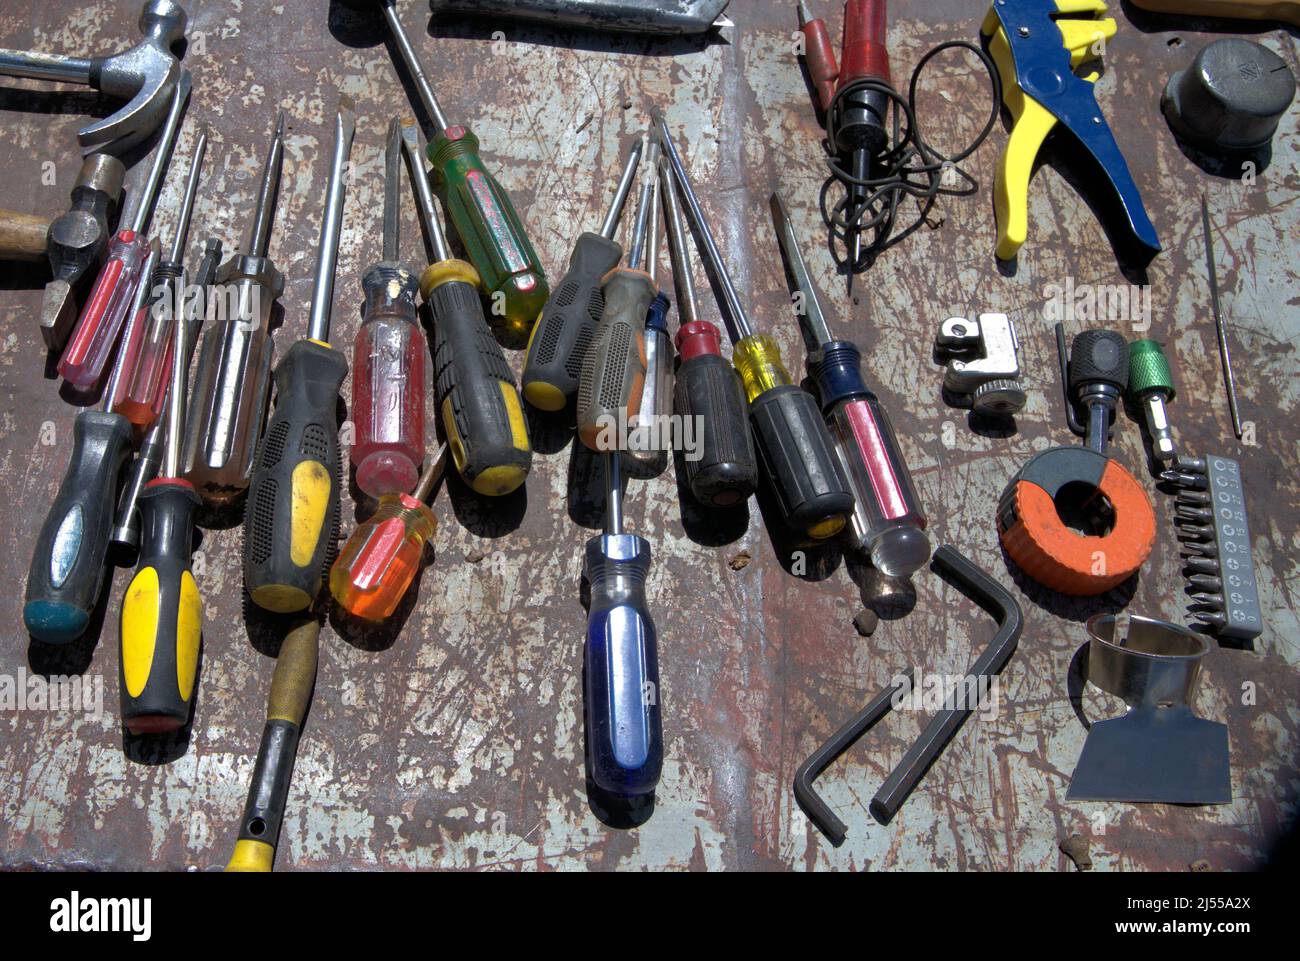 Una serie di cacciaviti e altri utensili utilizzati nella lavorazione del legno e in altri progetti. Foto Stock